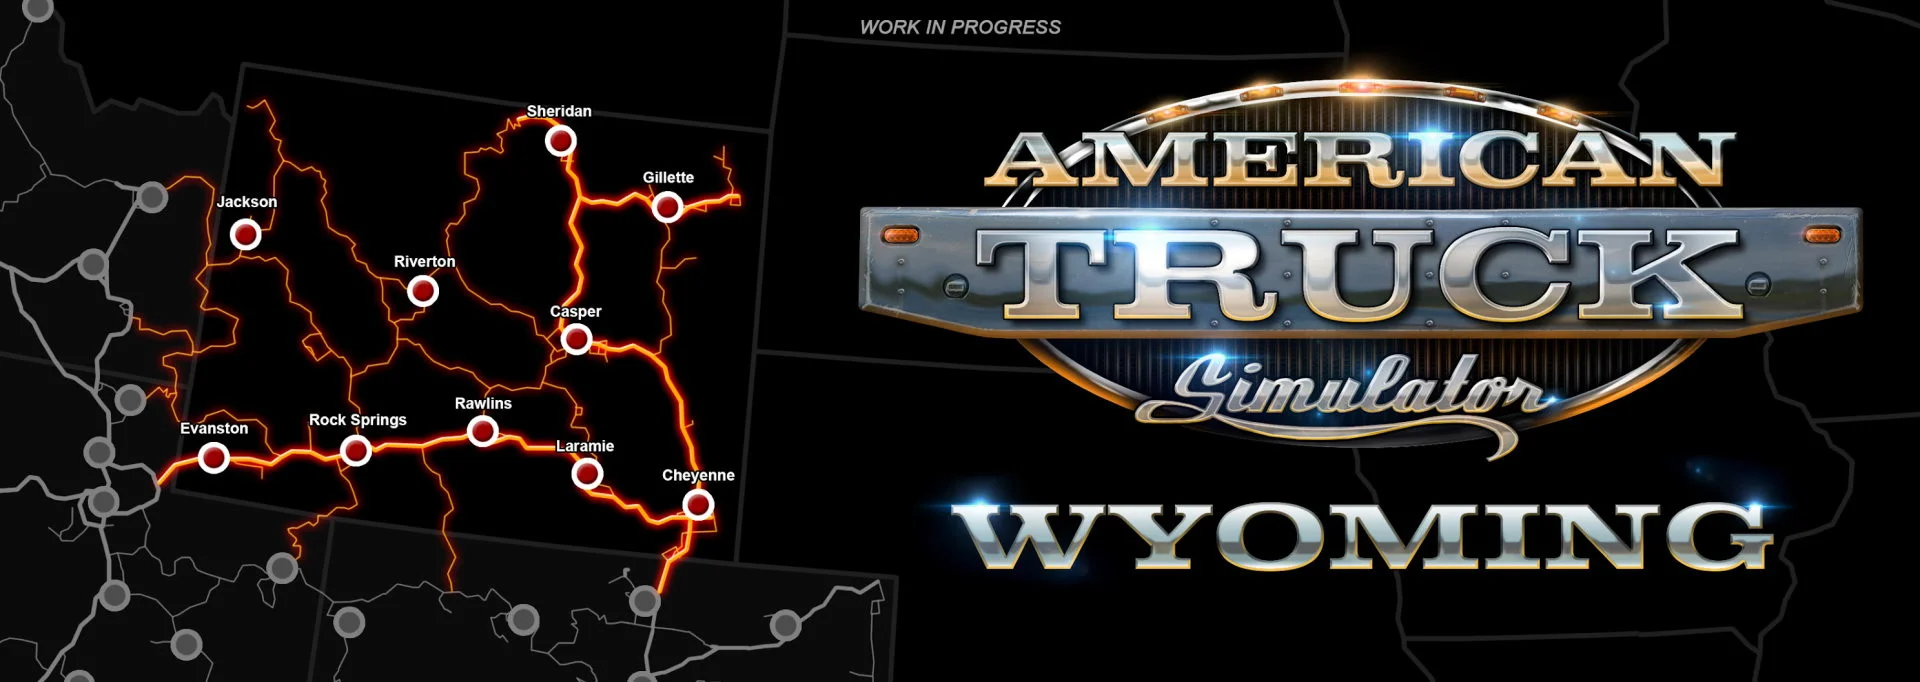 Авторы American Truck Simulator показали 20 минут геймплея дополнения Wyoming - фото 1